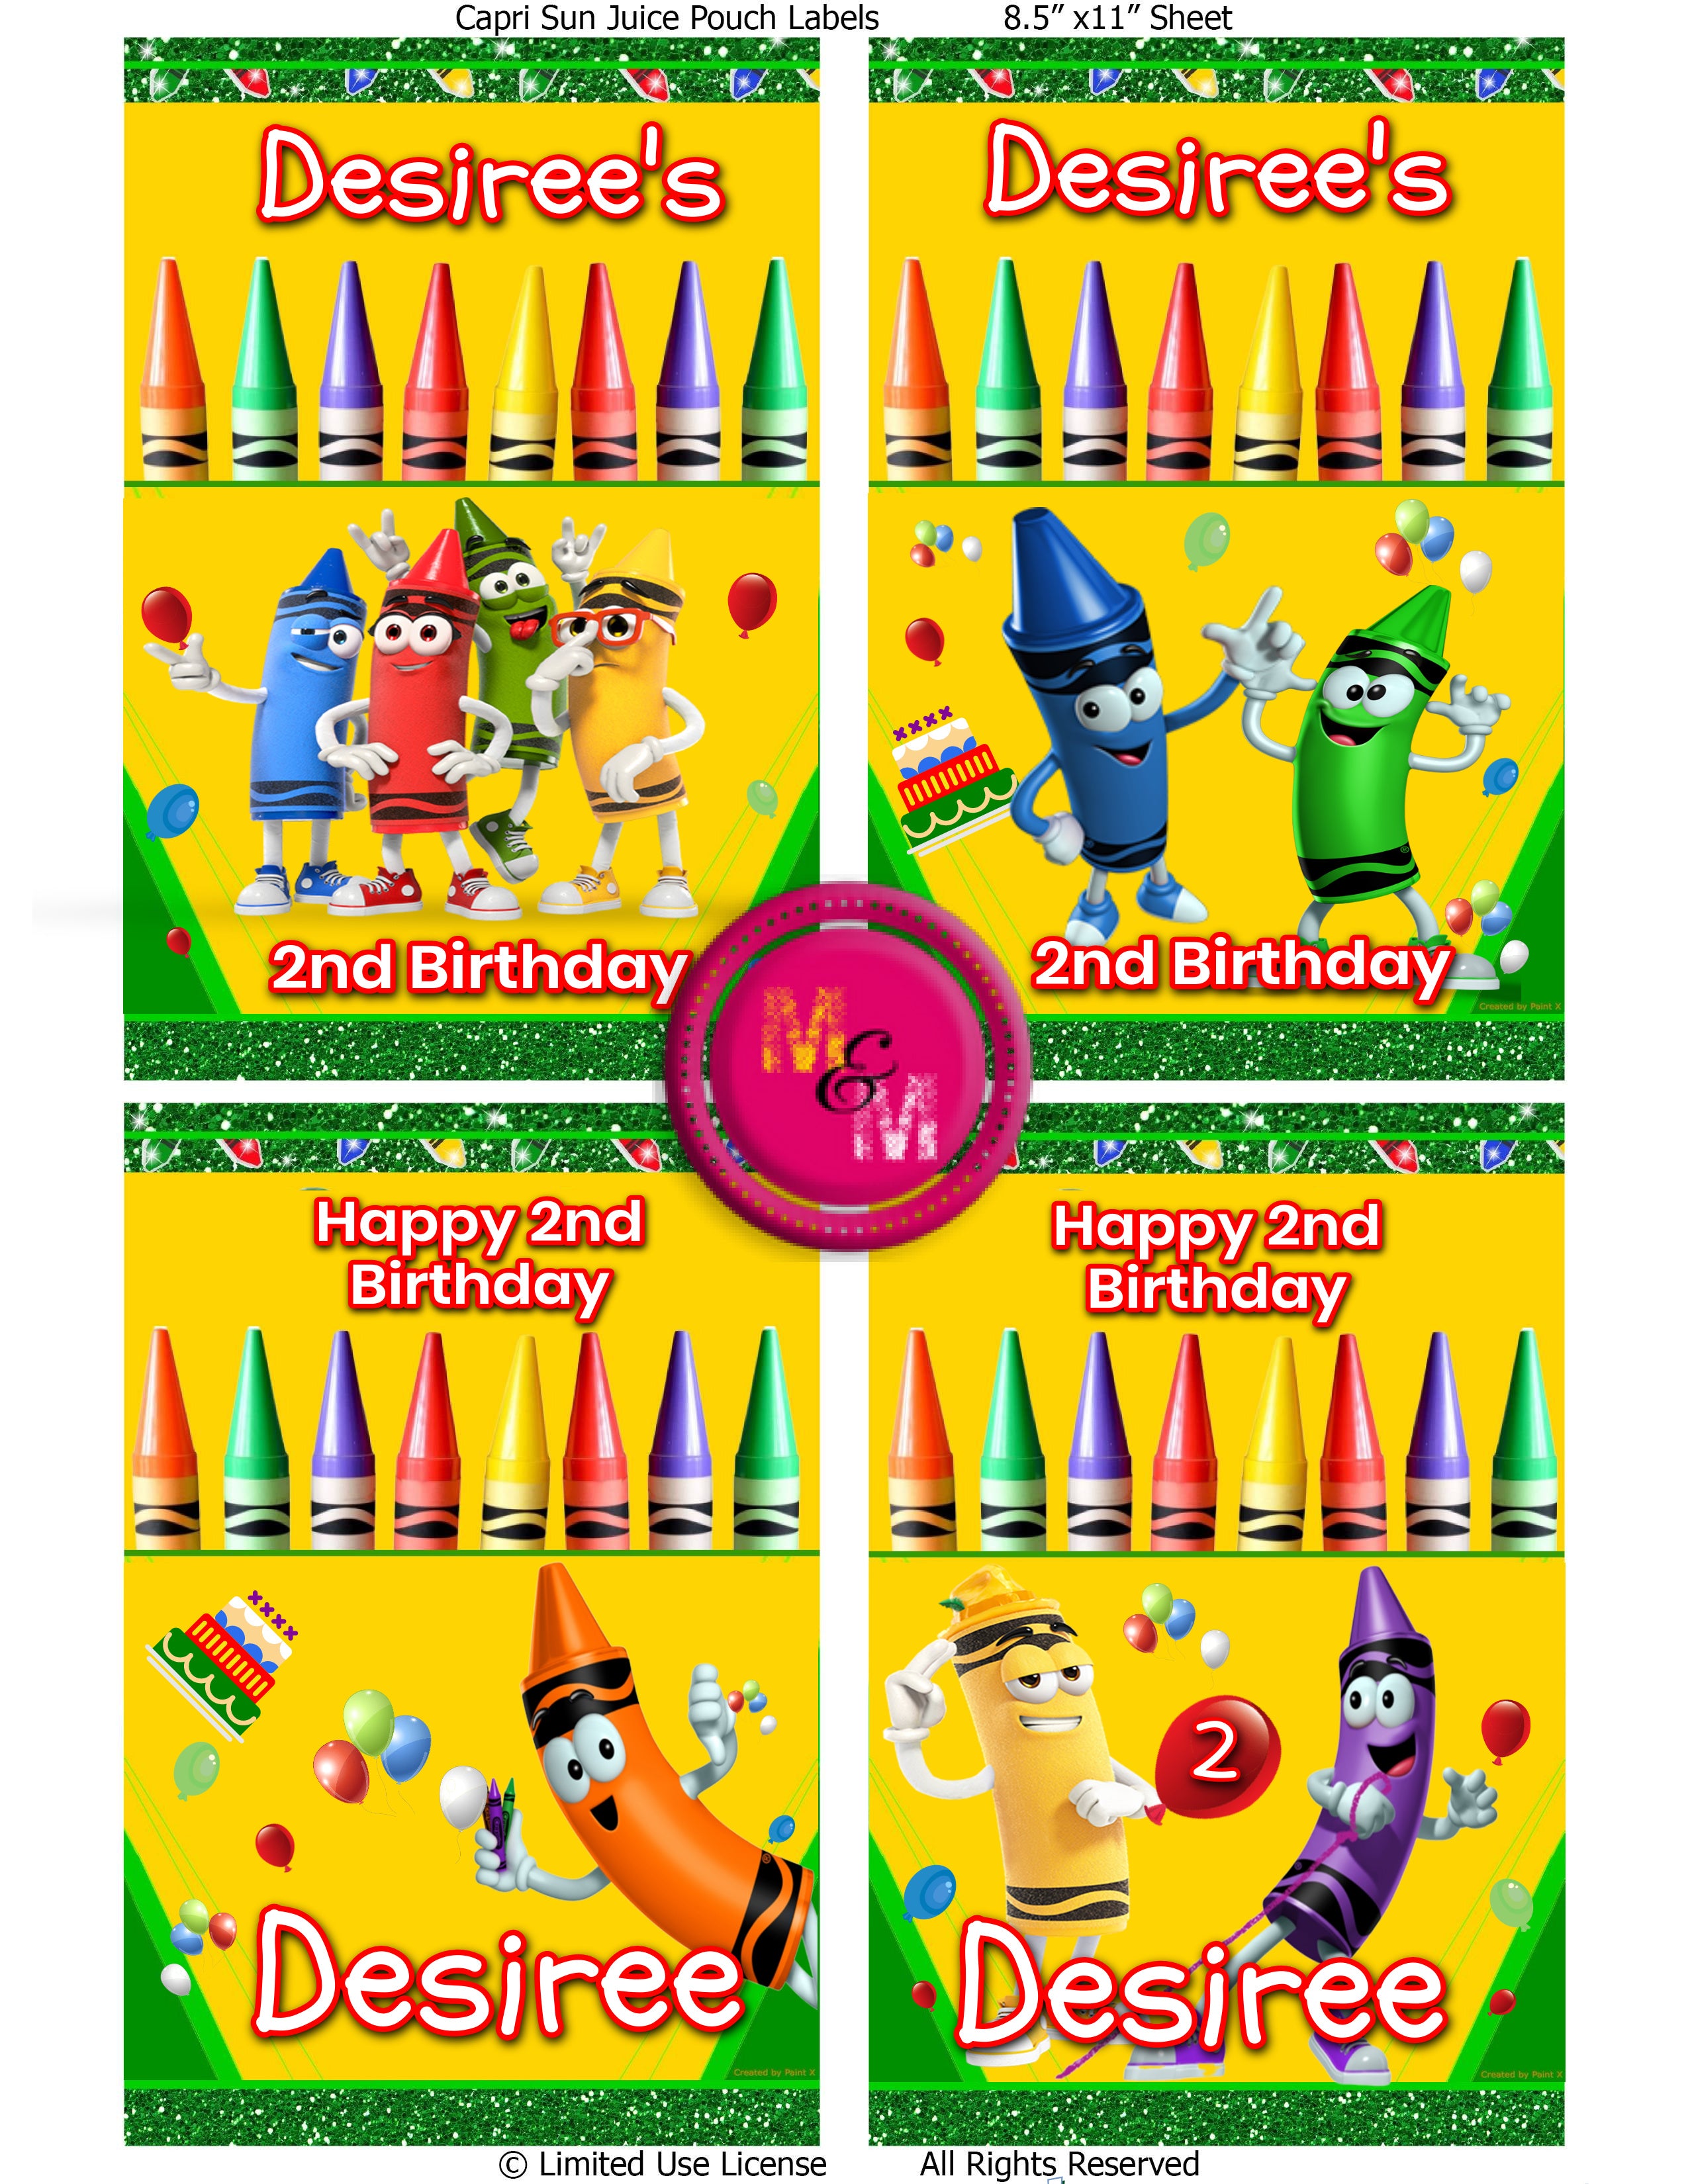 Editable Crayon Chip Bag Set Mini Bundle, Crayon Party Favors, Crayon Capri Sun, Crayon Juice Pouch Labels, Toddler Party Favors, Crayon Treat Bag